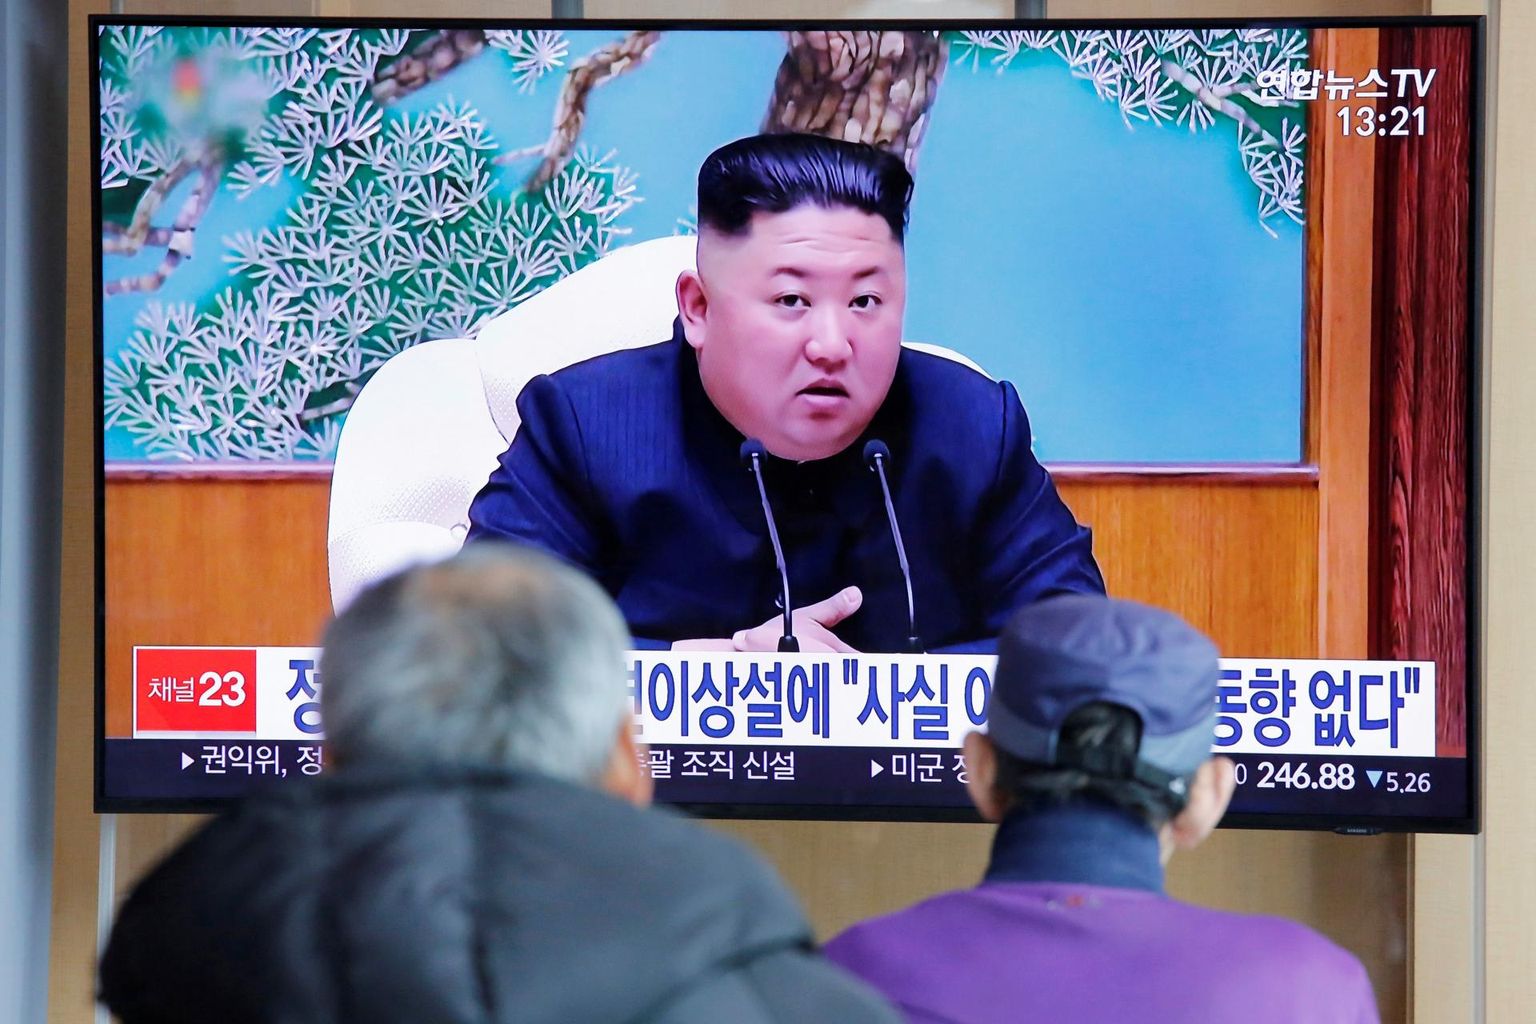 Lõunakorealased vaatamas uudistesaadet Põhja-Korea liidrist Kim Jong-unist, keda pole nähtud alates aprilli keskpaigast alates. 